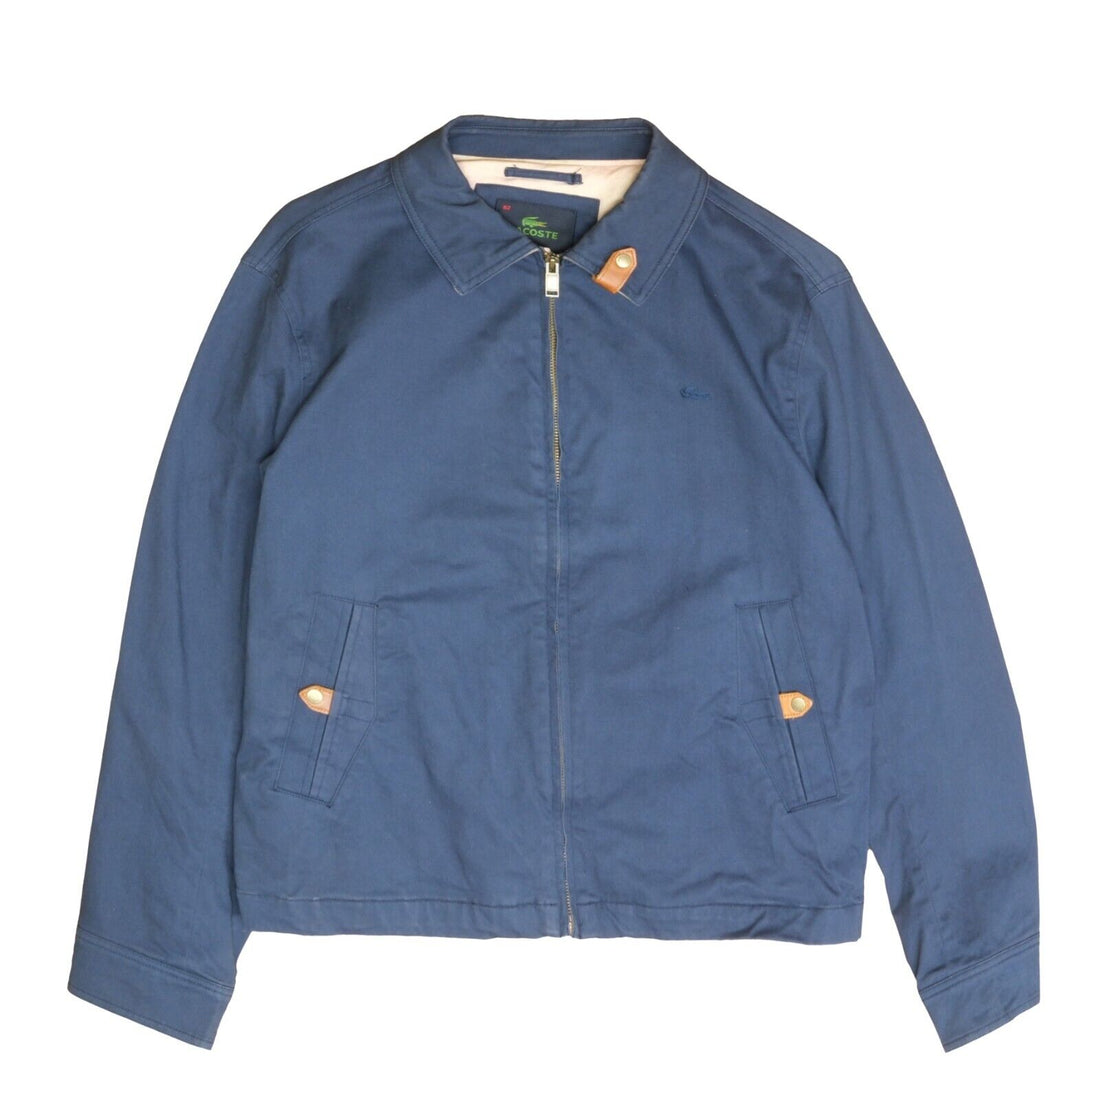 Lacoste Harrington Jacket Size 52 Blue Embroidered